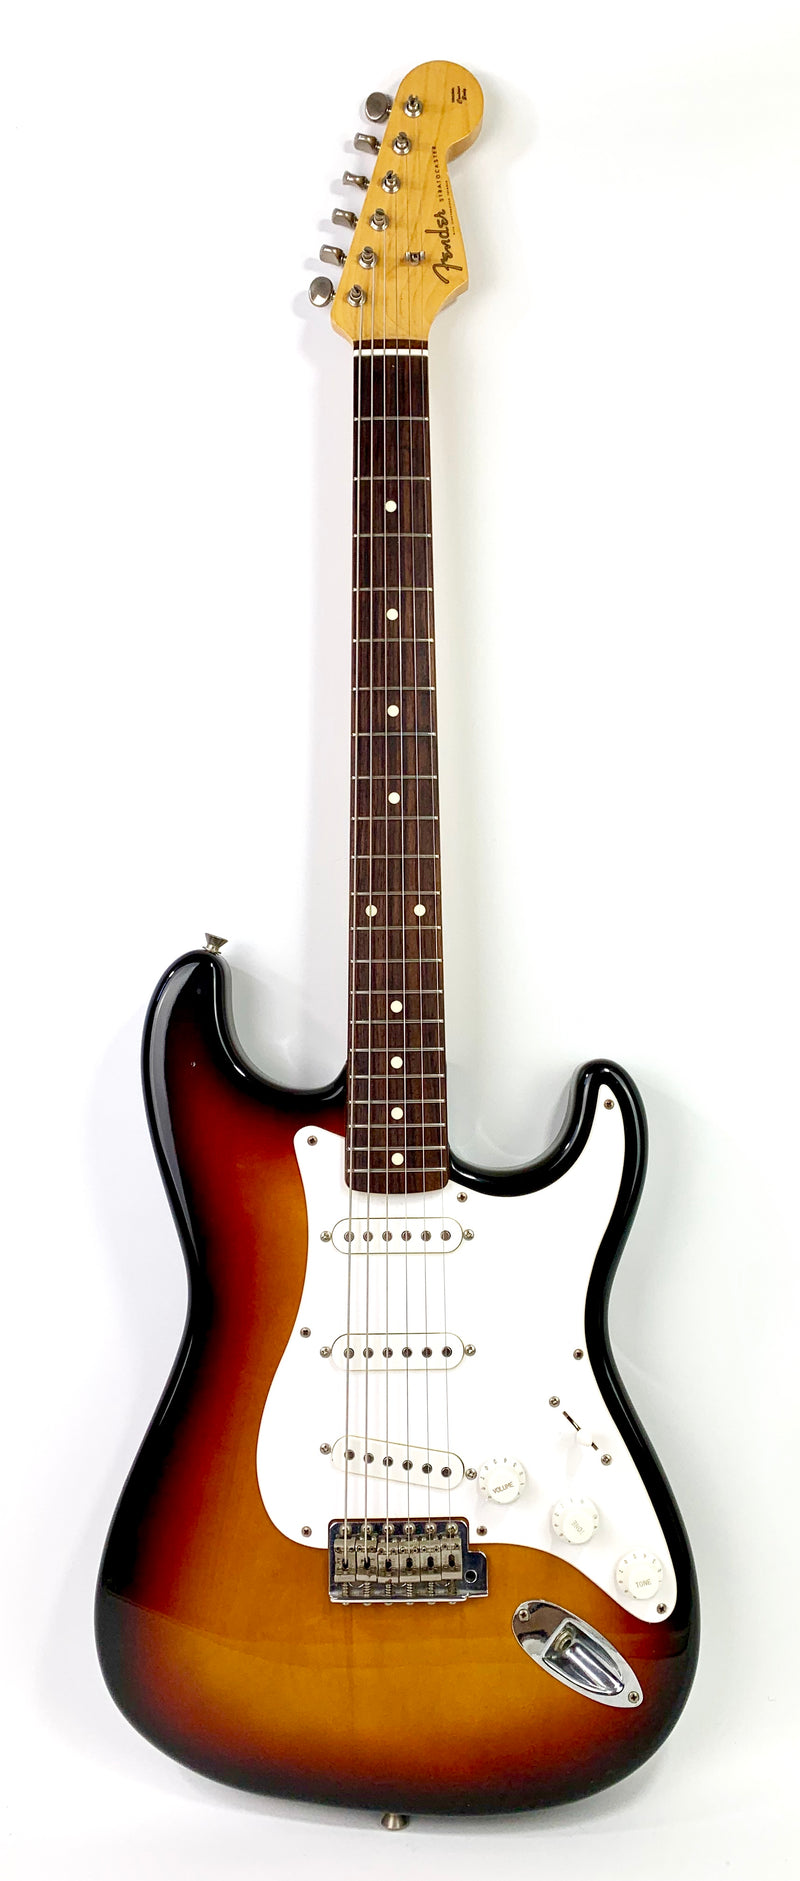 Fender Stratocaster MIJ de 1997